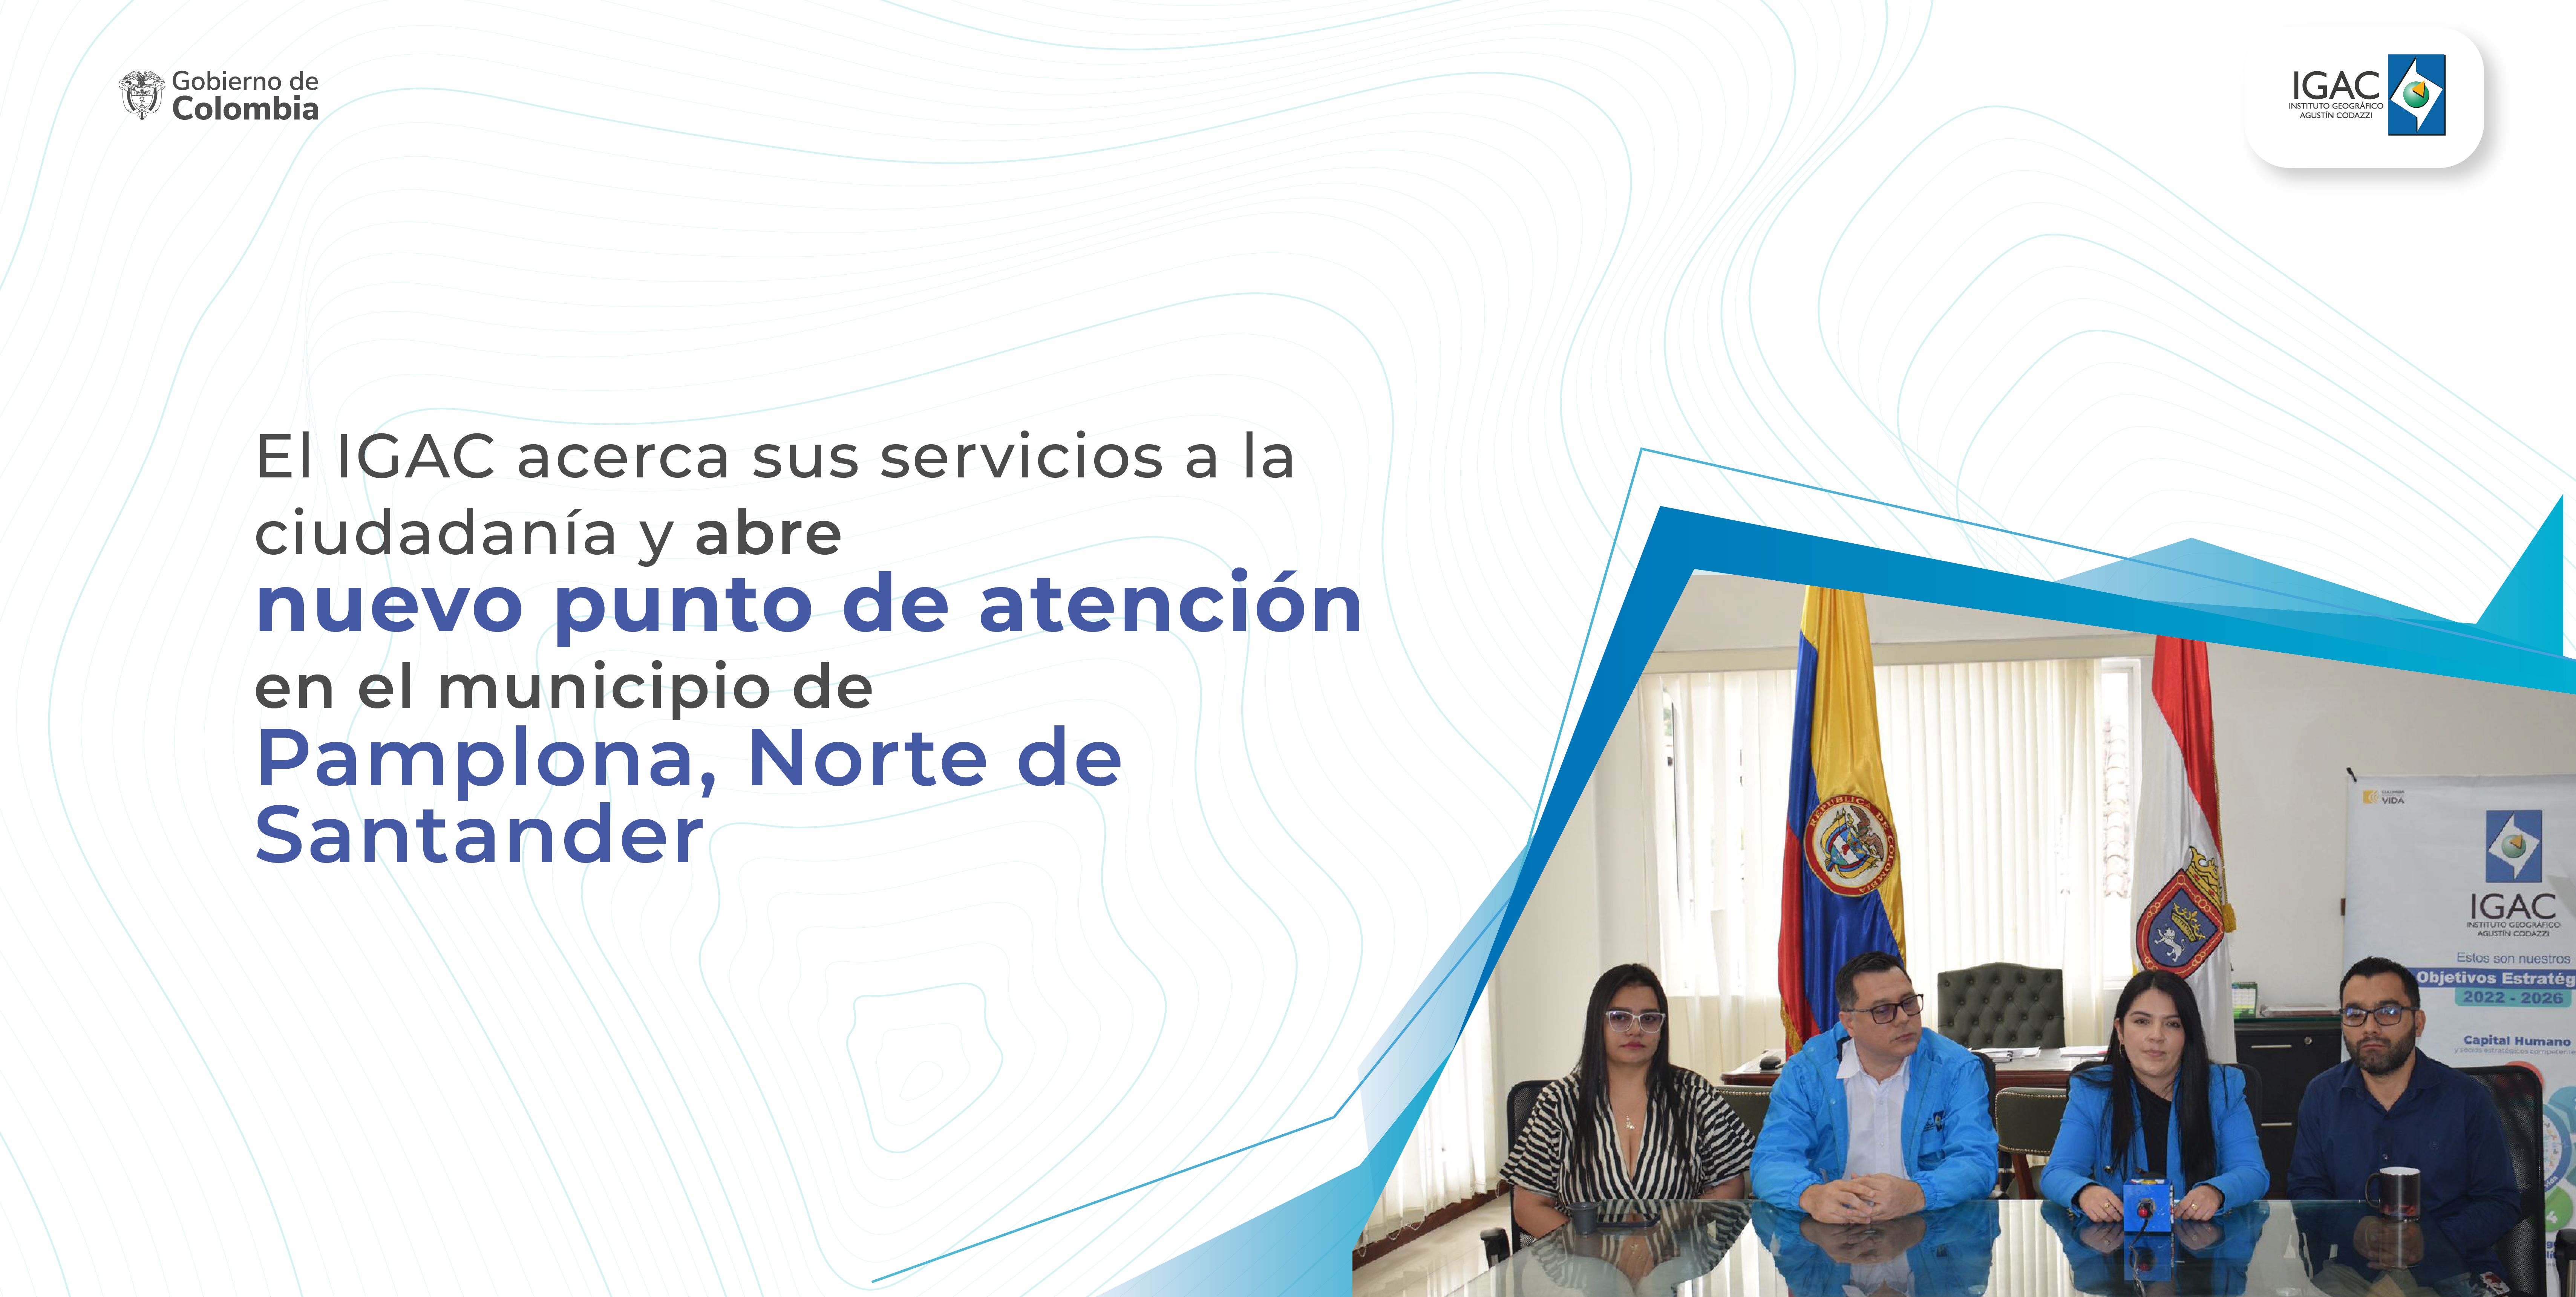 El IGAC acerca sus servicios a la ciudadanía y abre nuevo punto de atención en el municipio de Pamplona, Norte de Santander 